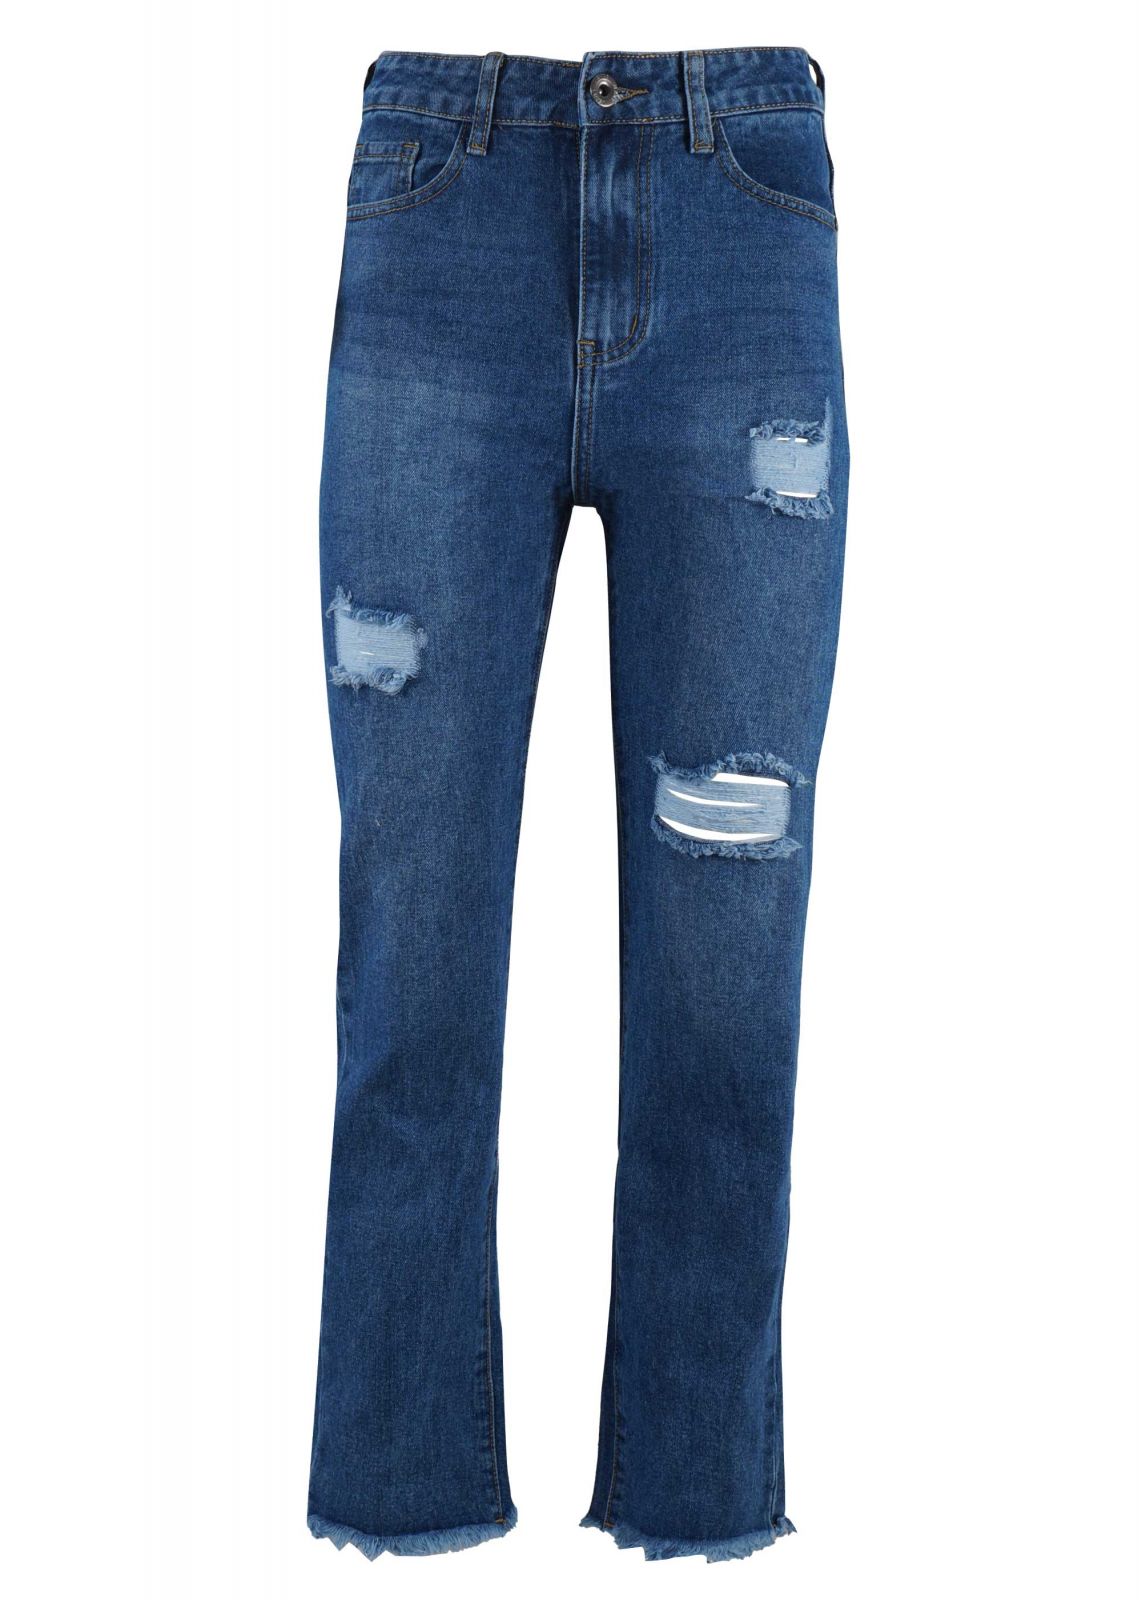 Γυναικείο jean παντελόνι ίσια γραμμή με σκισίματα. Denim collection